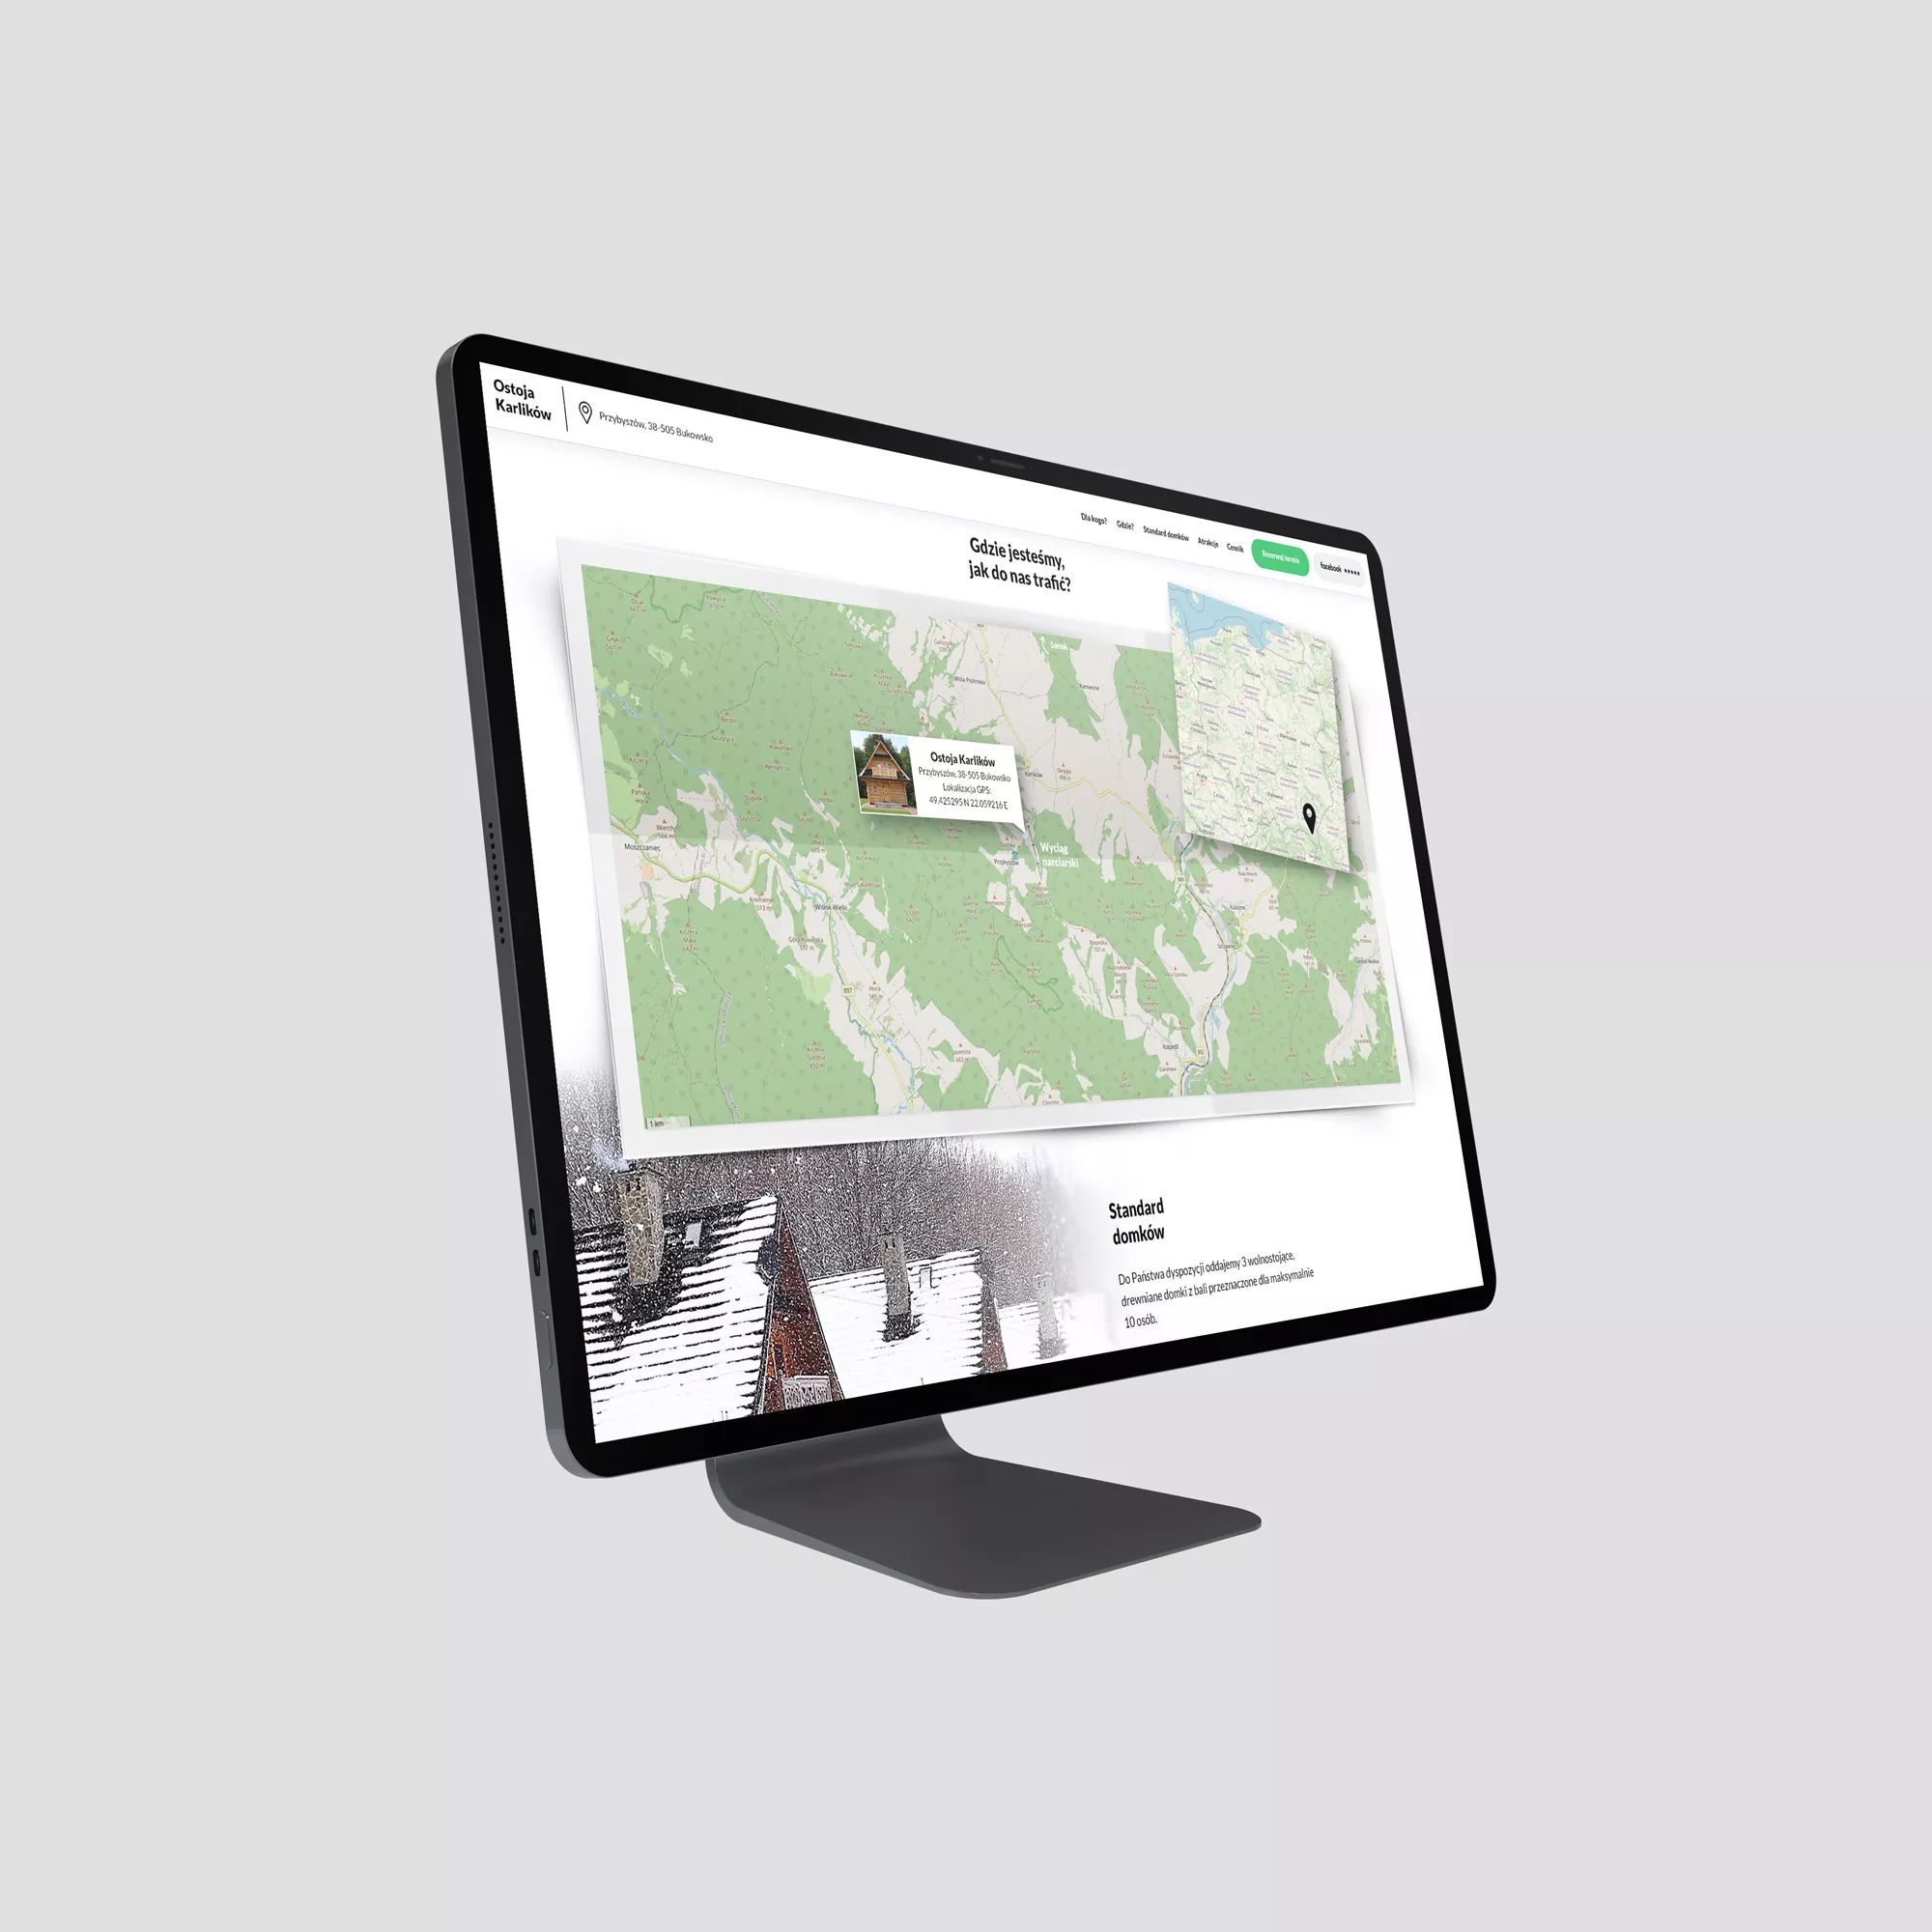 Ostoja Karlików - noclegi turystyczne Bieszczady - projekt unikalnej strony internetowej - wizualizacja sekcji z mapą